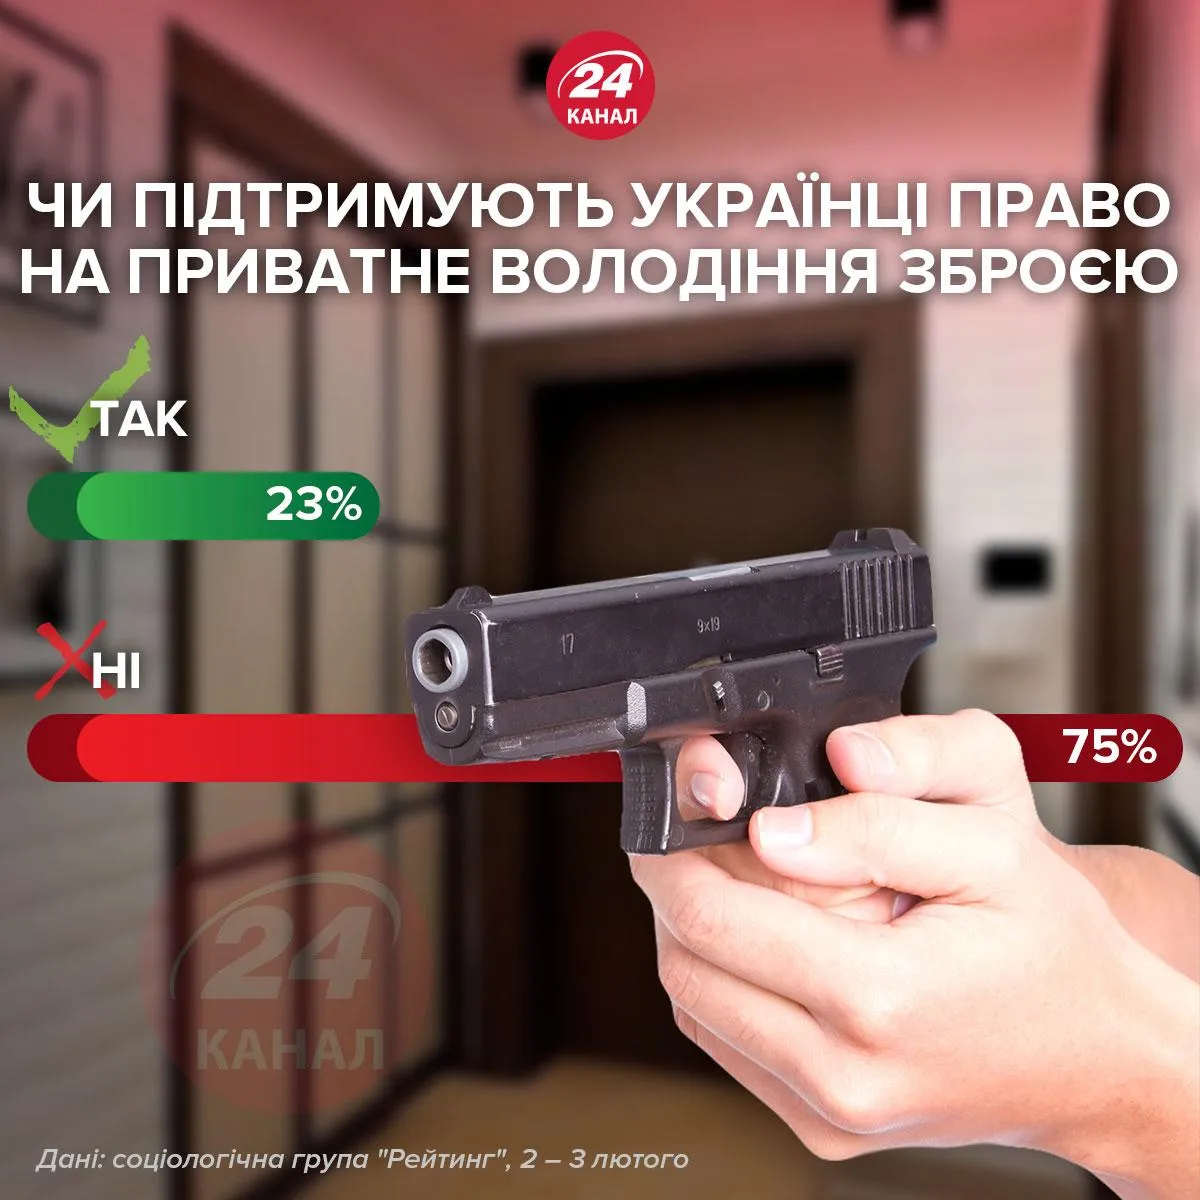 ​Поддерживают ли украинцы право на частное владение оружием / Инфографика 24 канала